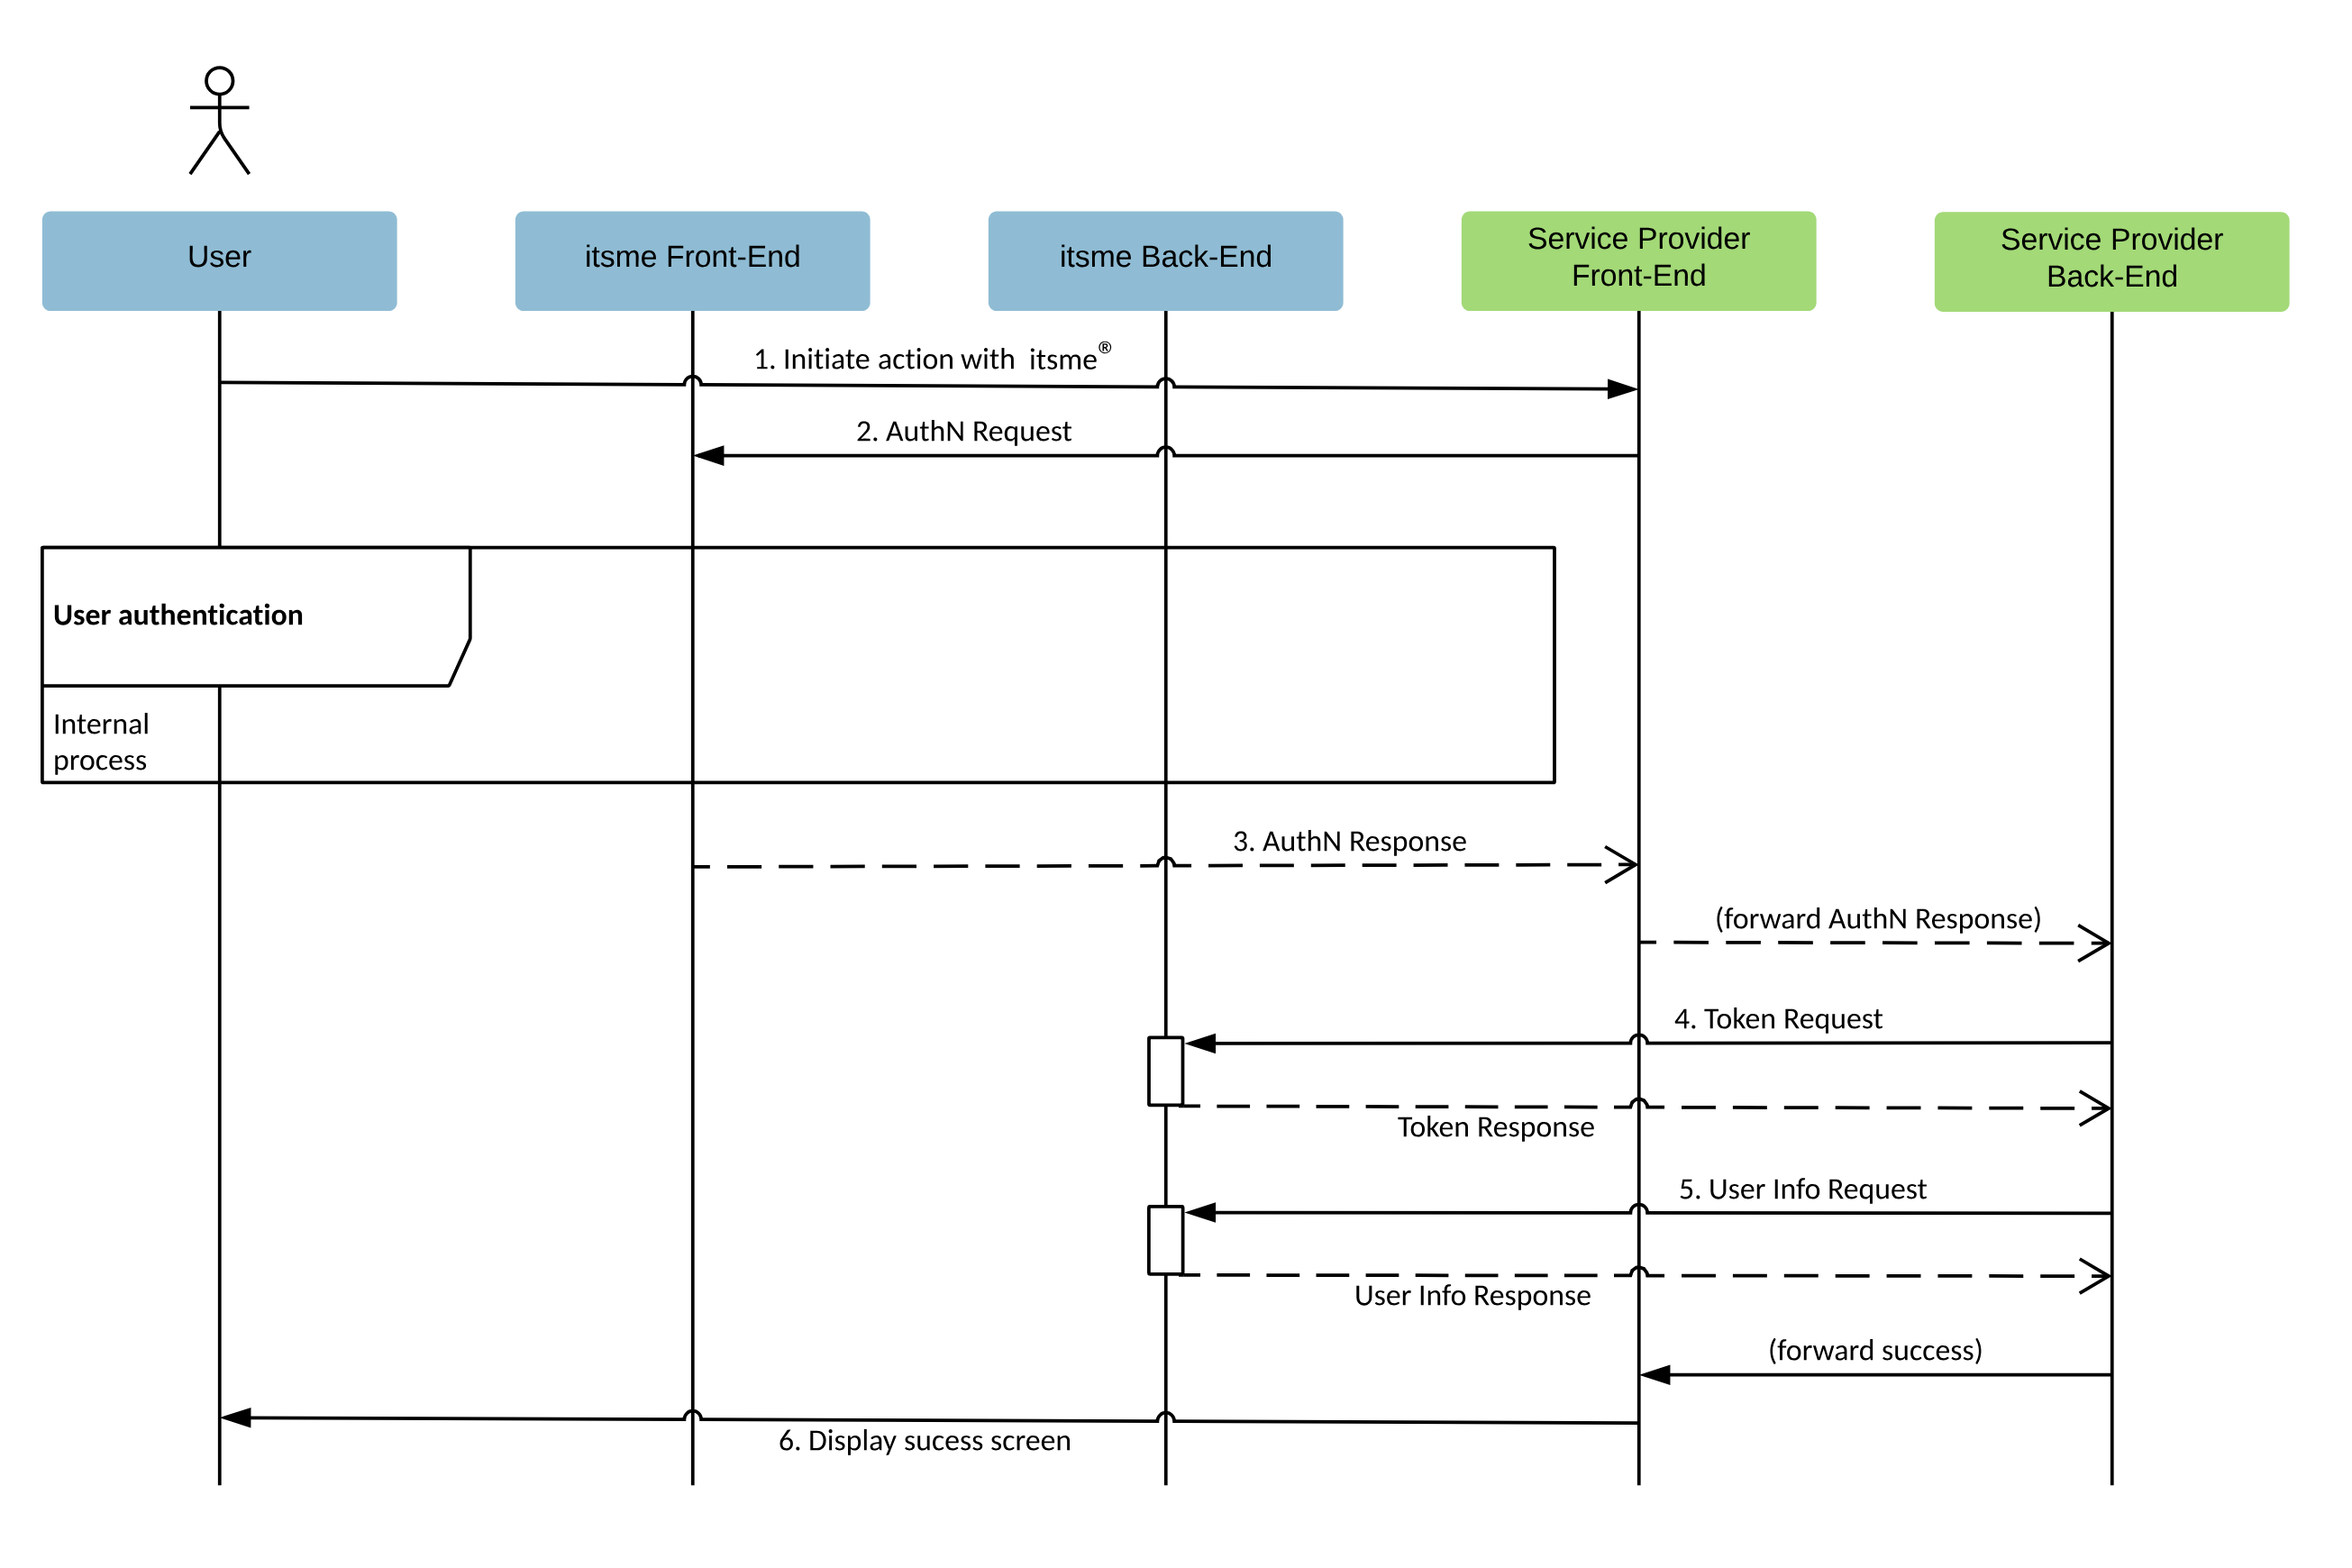 Sequence diagram describing the OpenID flow